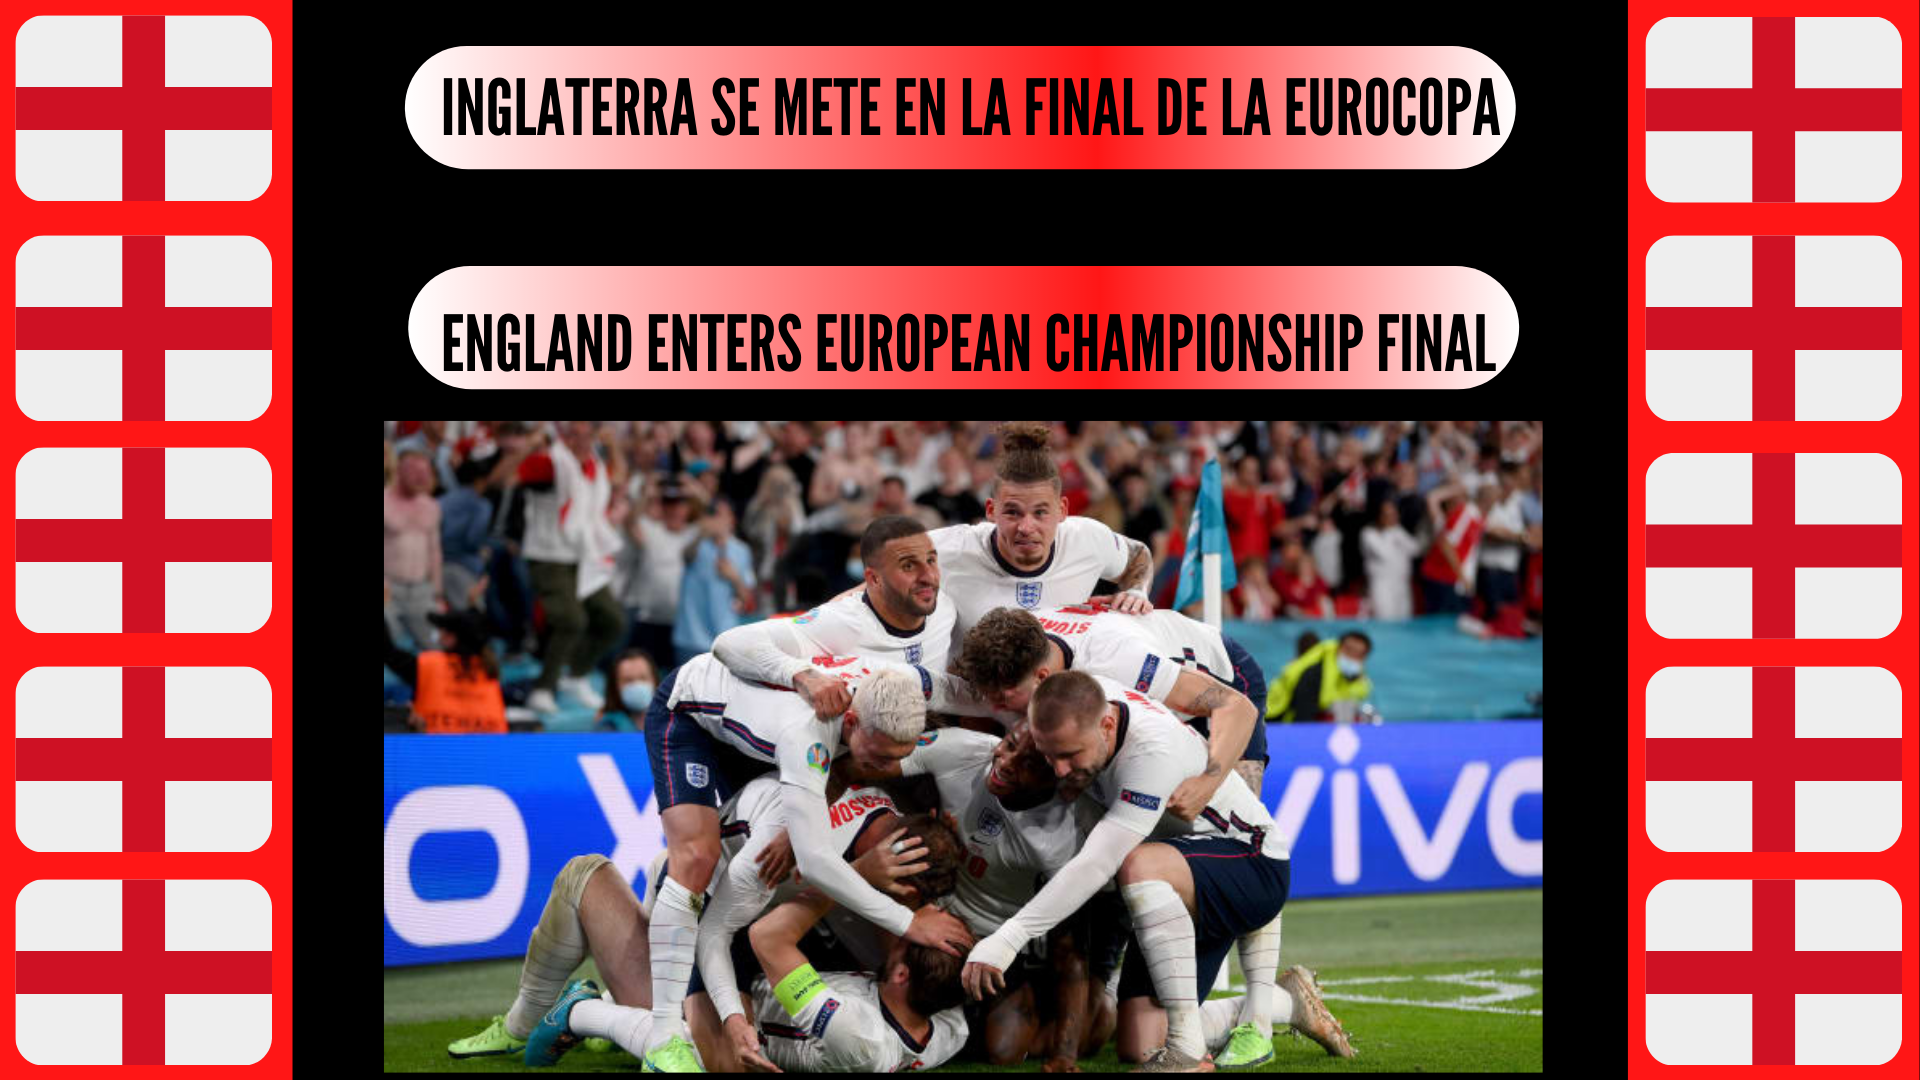 Inglaterra se mete en la final de la Eurocopa (1).png